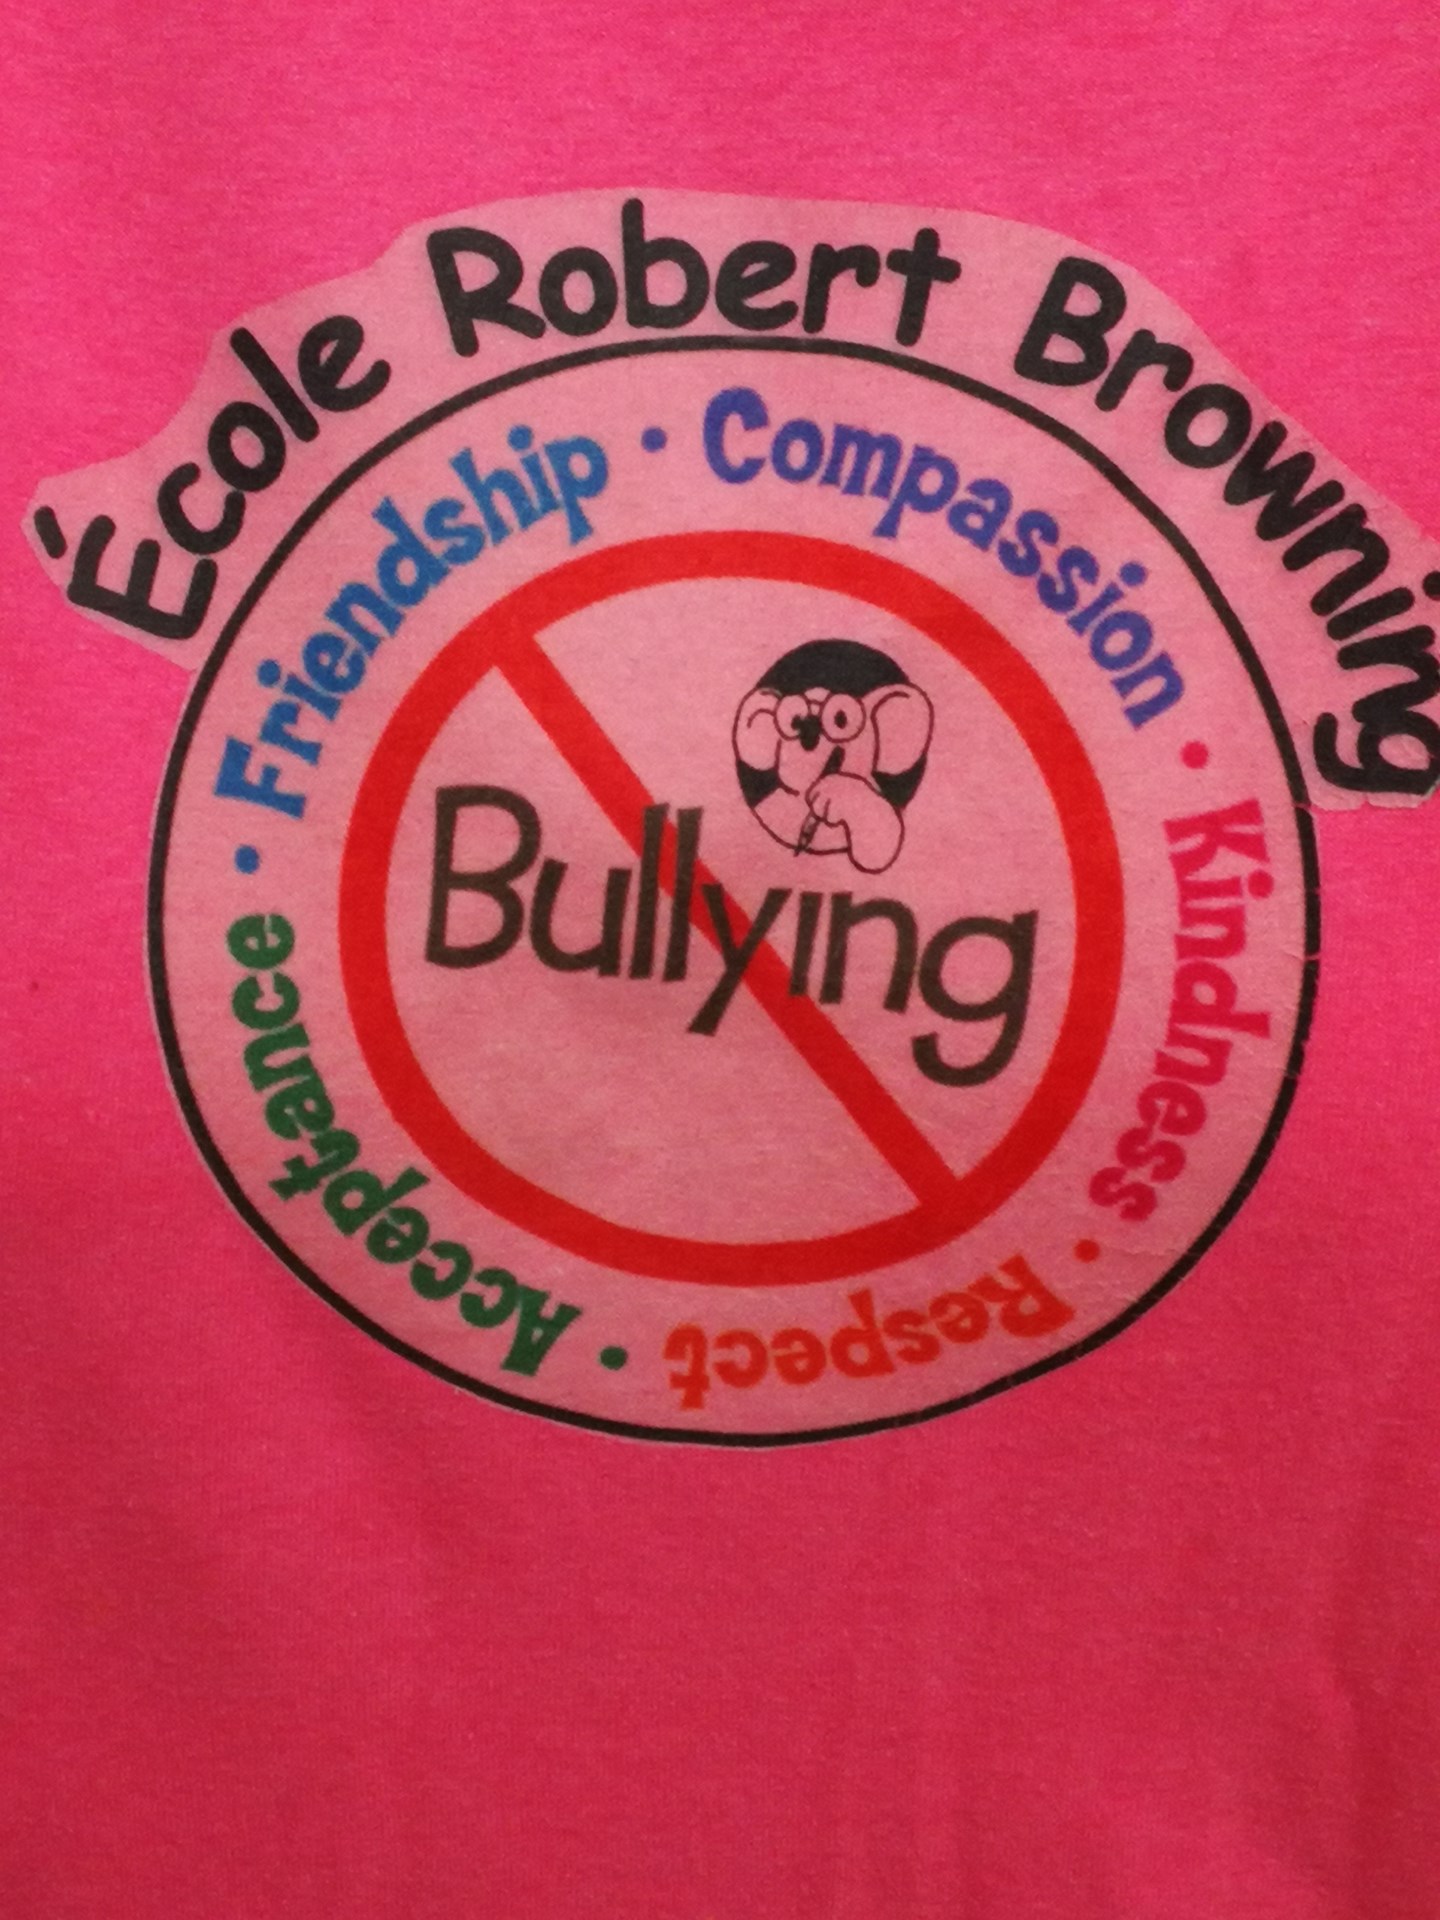 Bully shirt.jpg